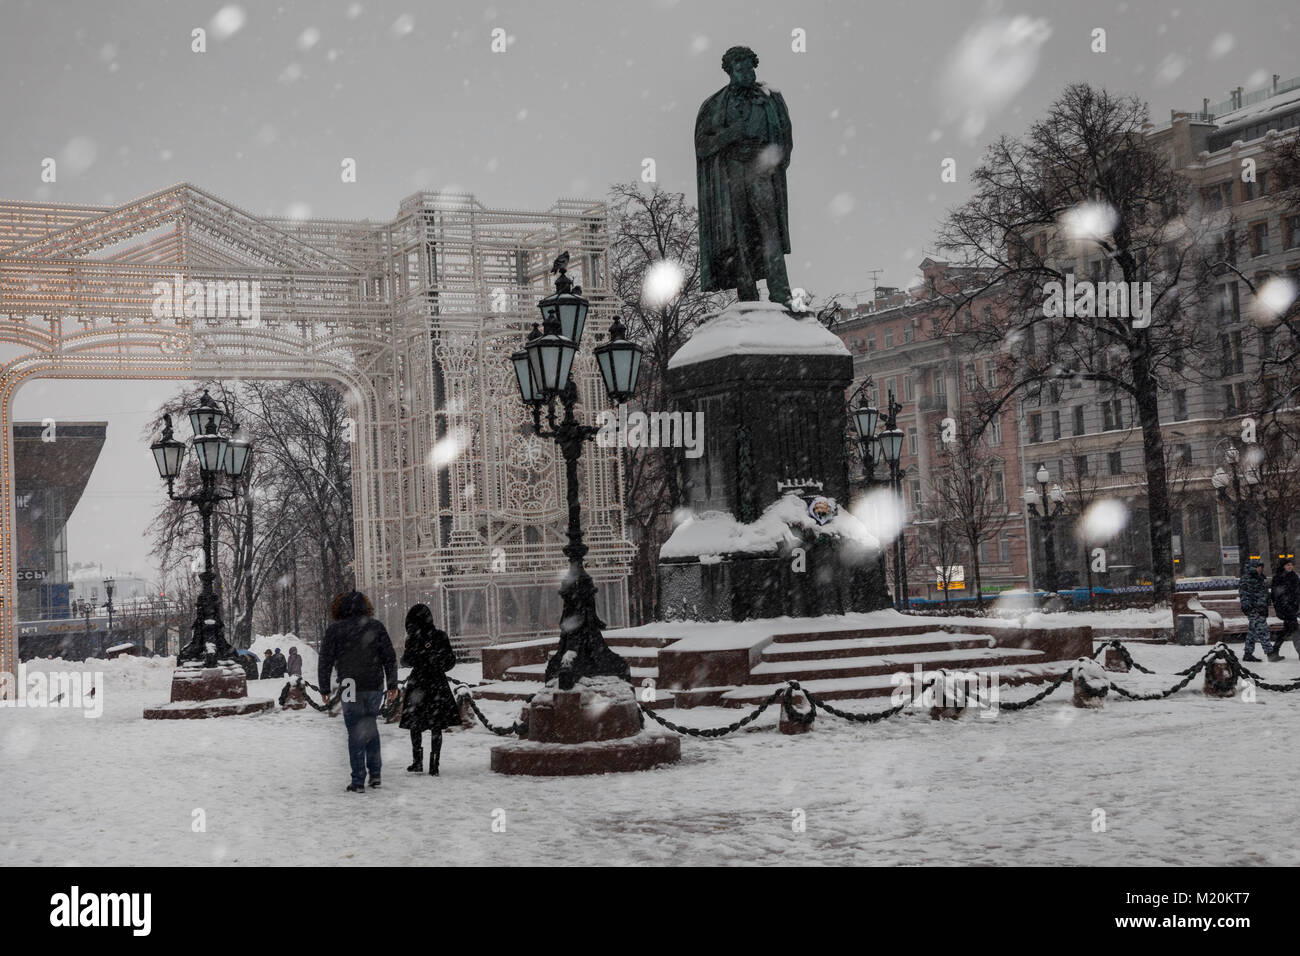 Vue du monument à Alexandre Pouchkine et de la Place Pouchkine, dans le centre de Moscou pendant une forte chute de neige, la Russie Banque D'Images